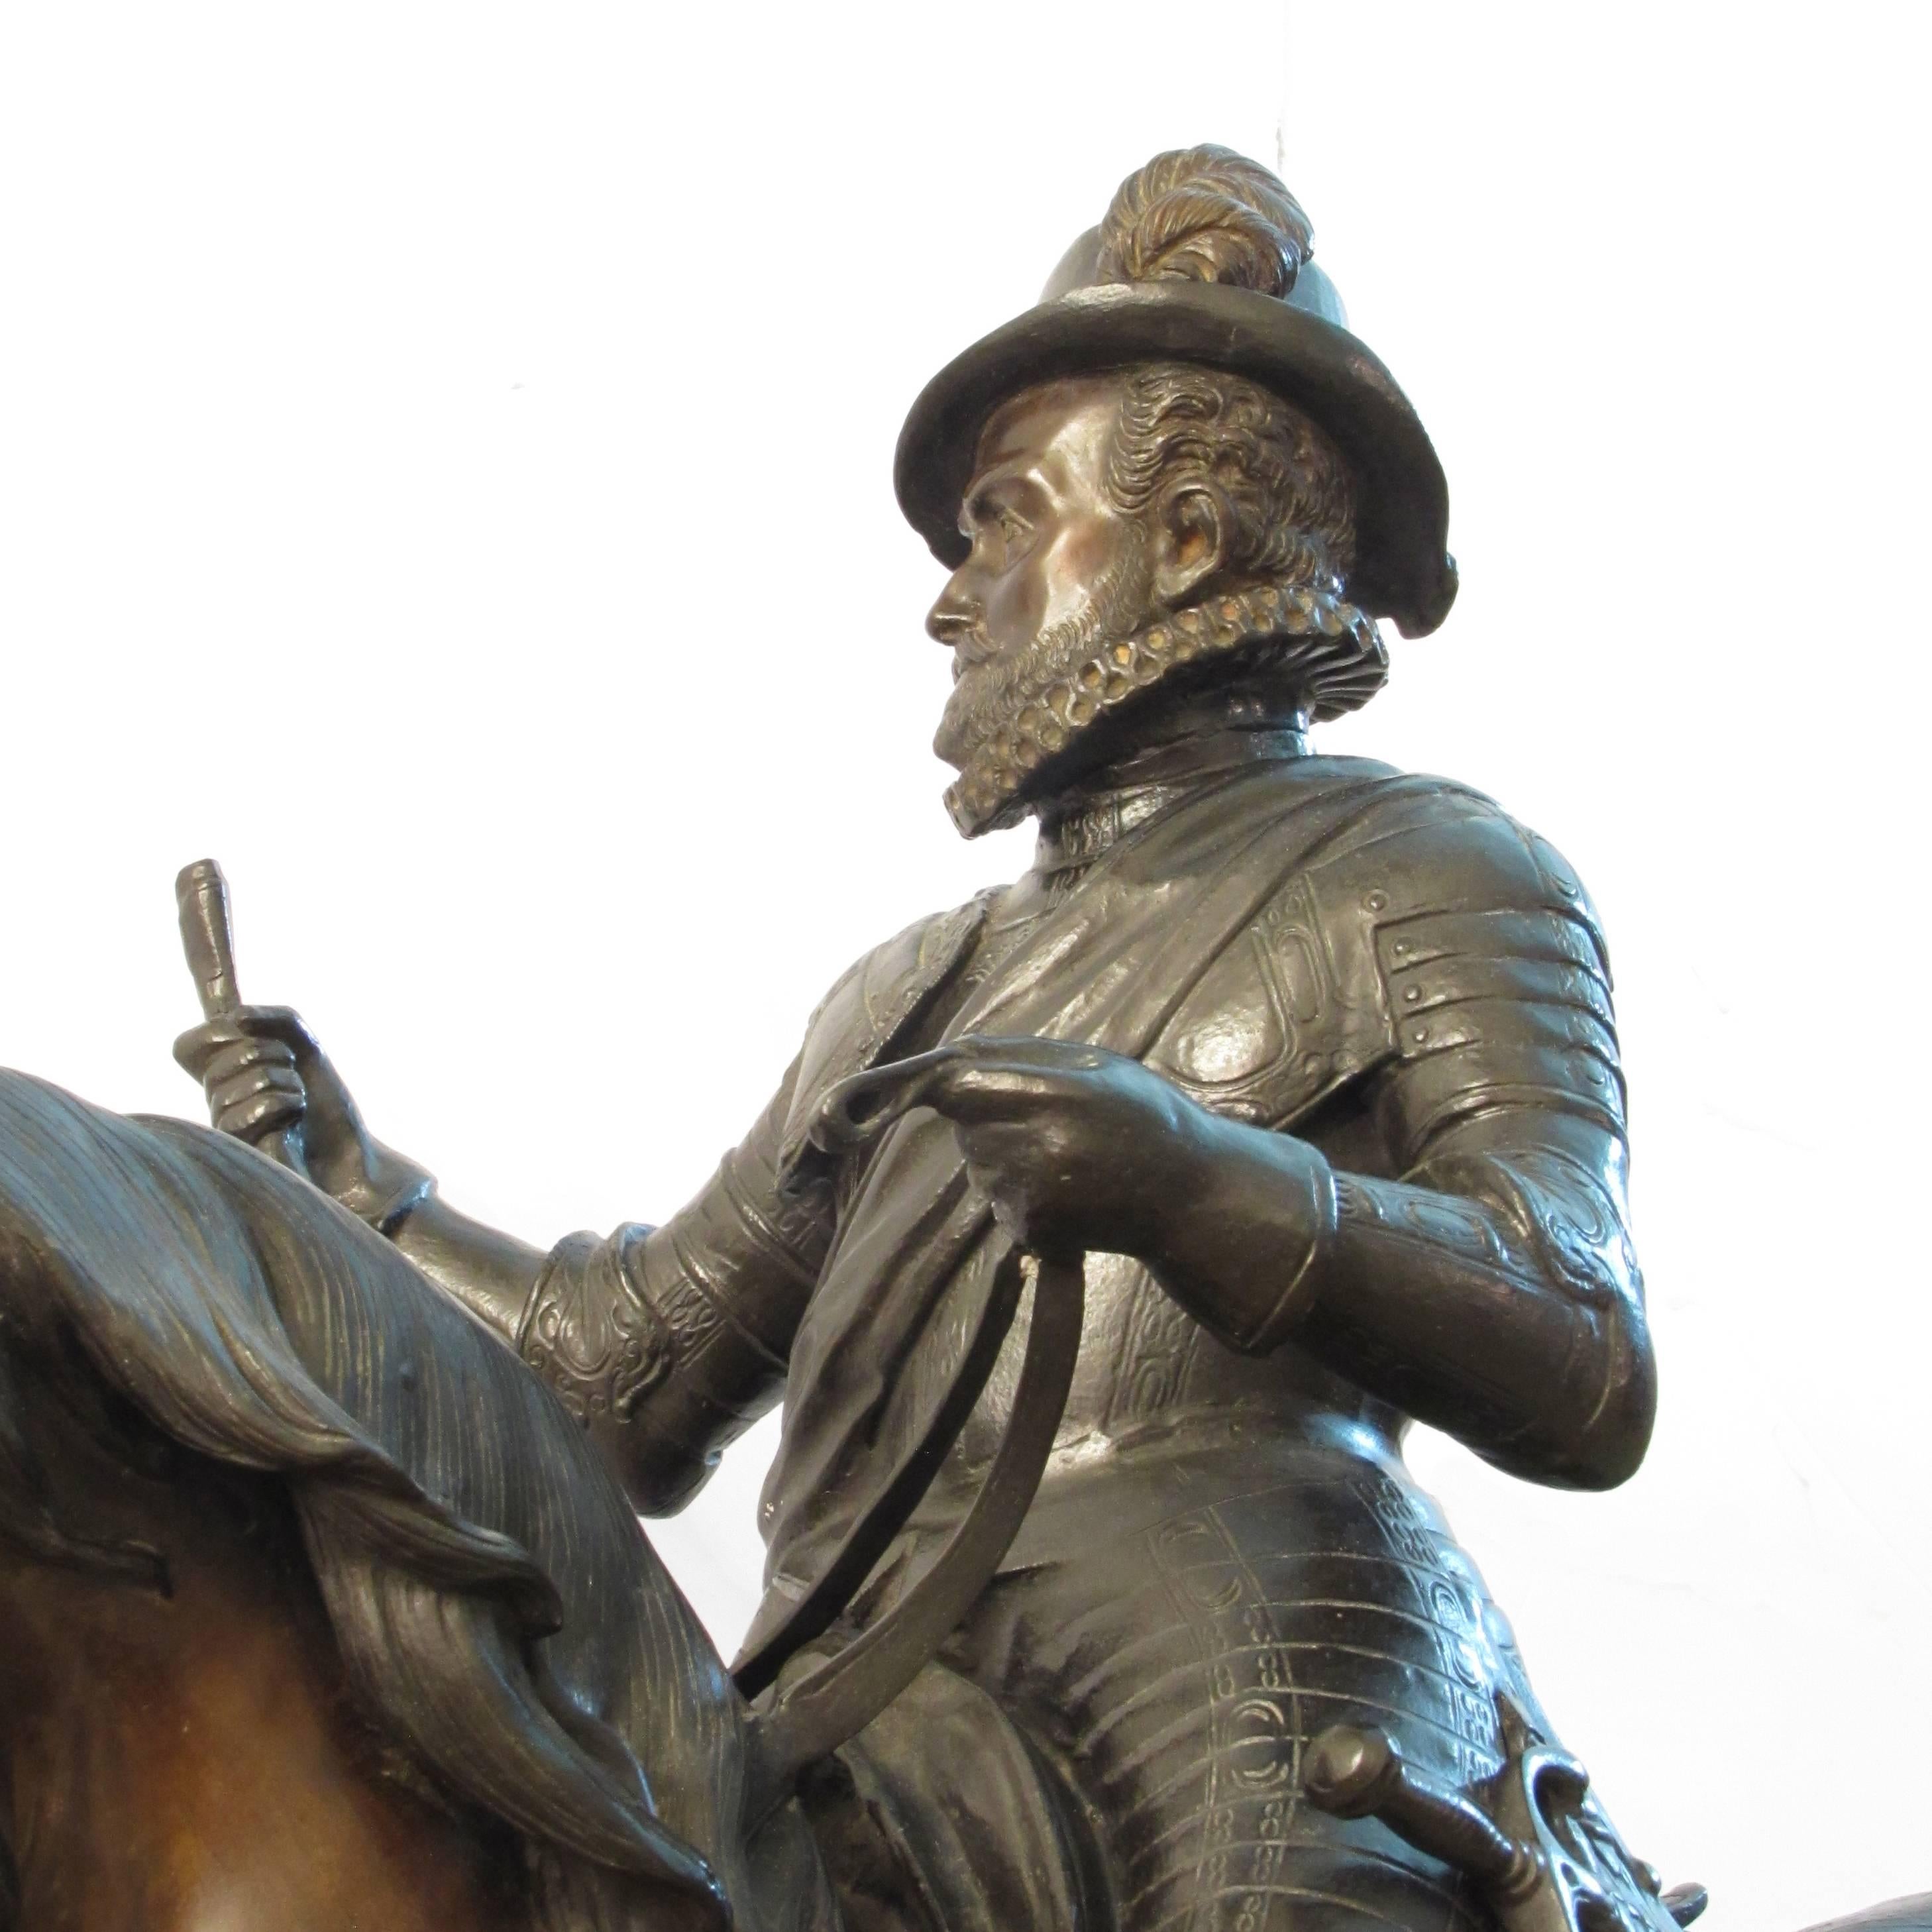 Cast British 19th Century Equestrian Statue Depicting Philip II of Spain in Bronze